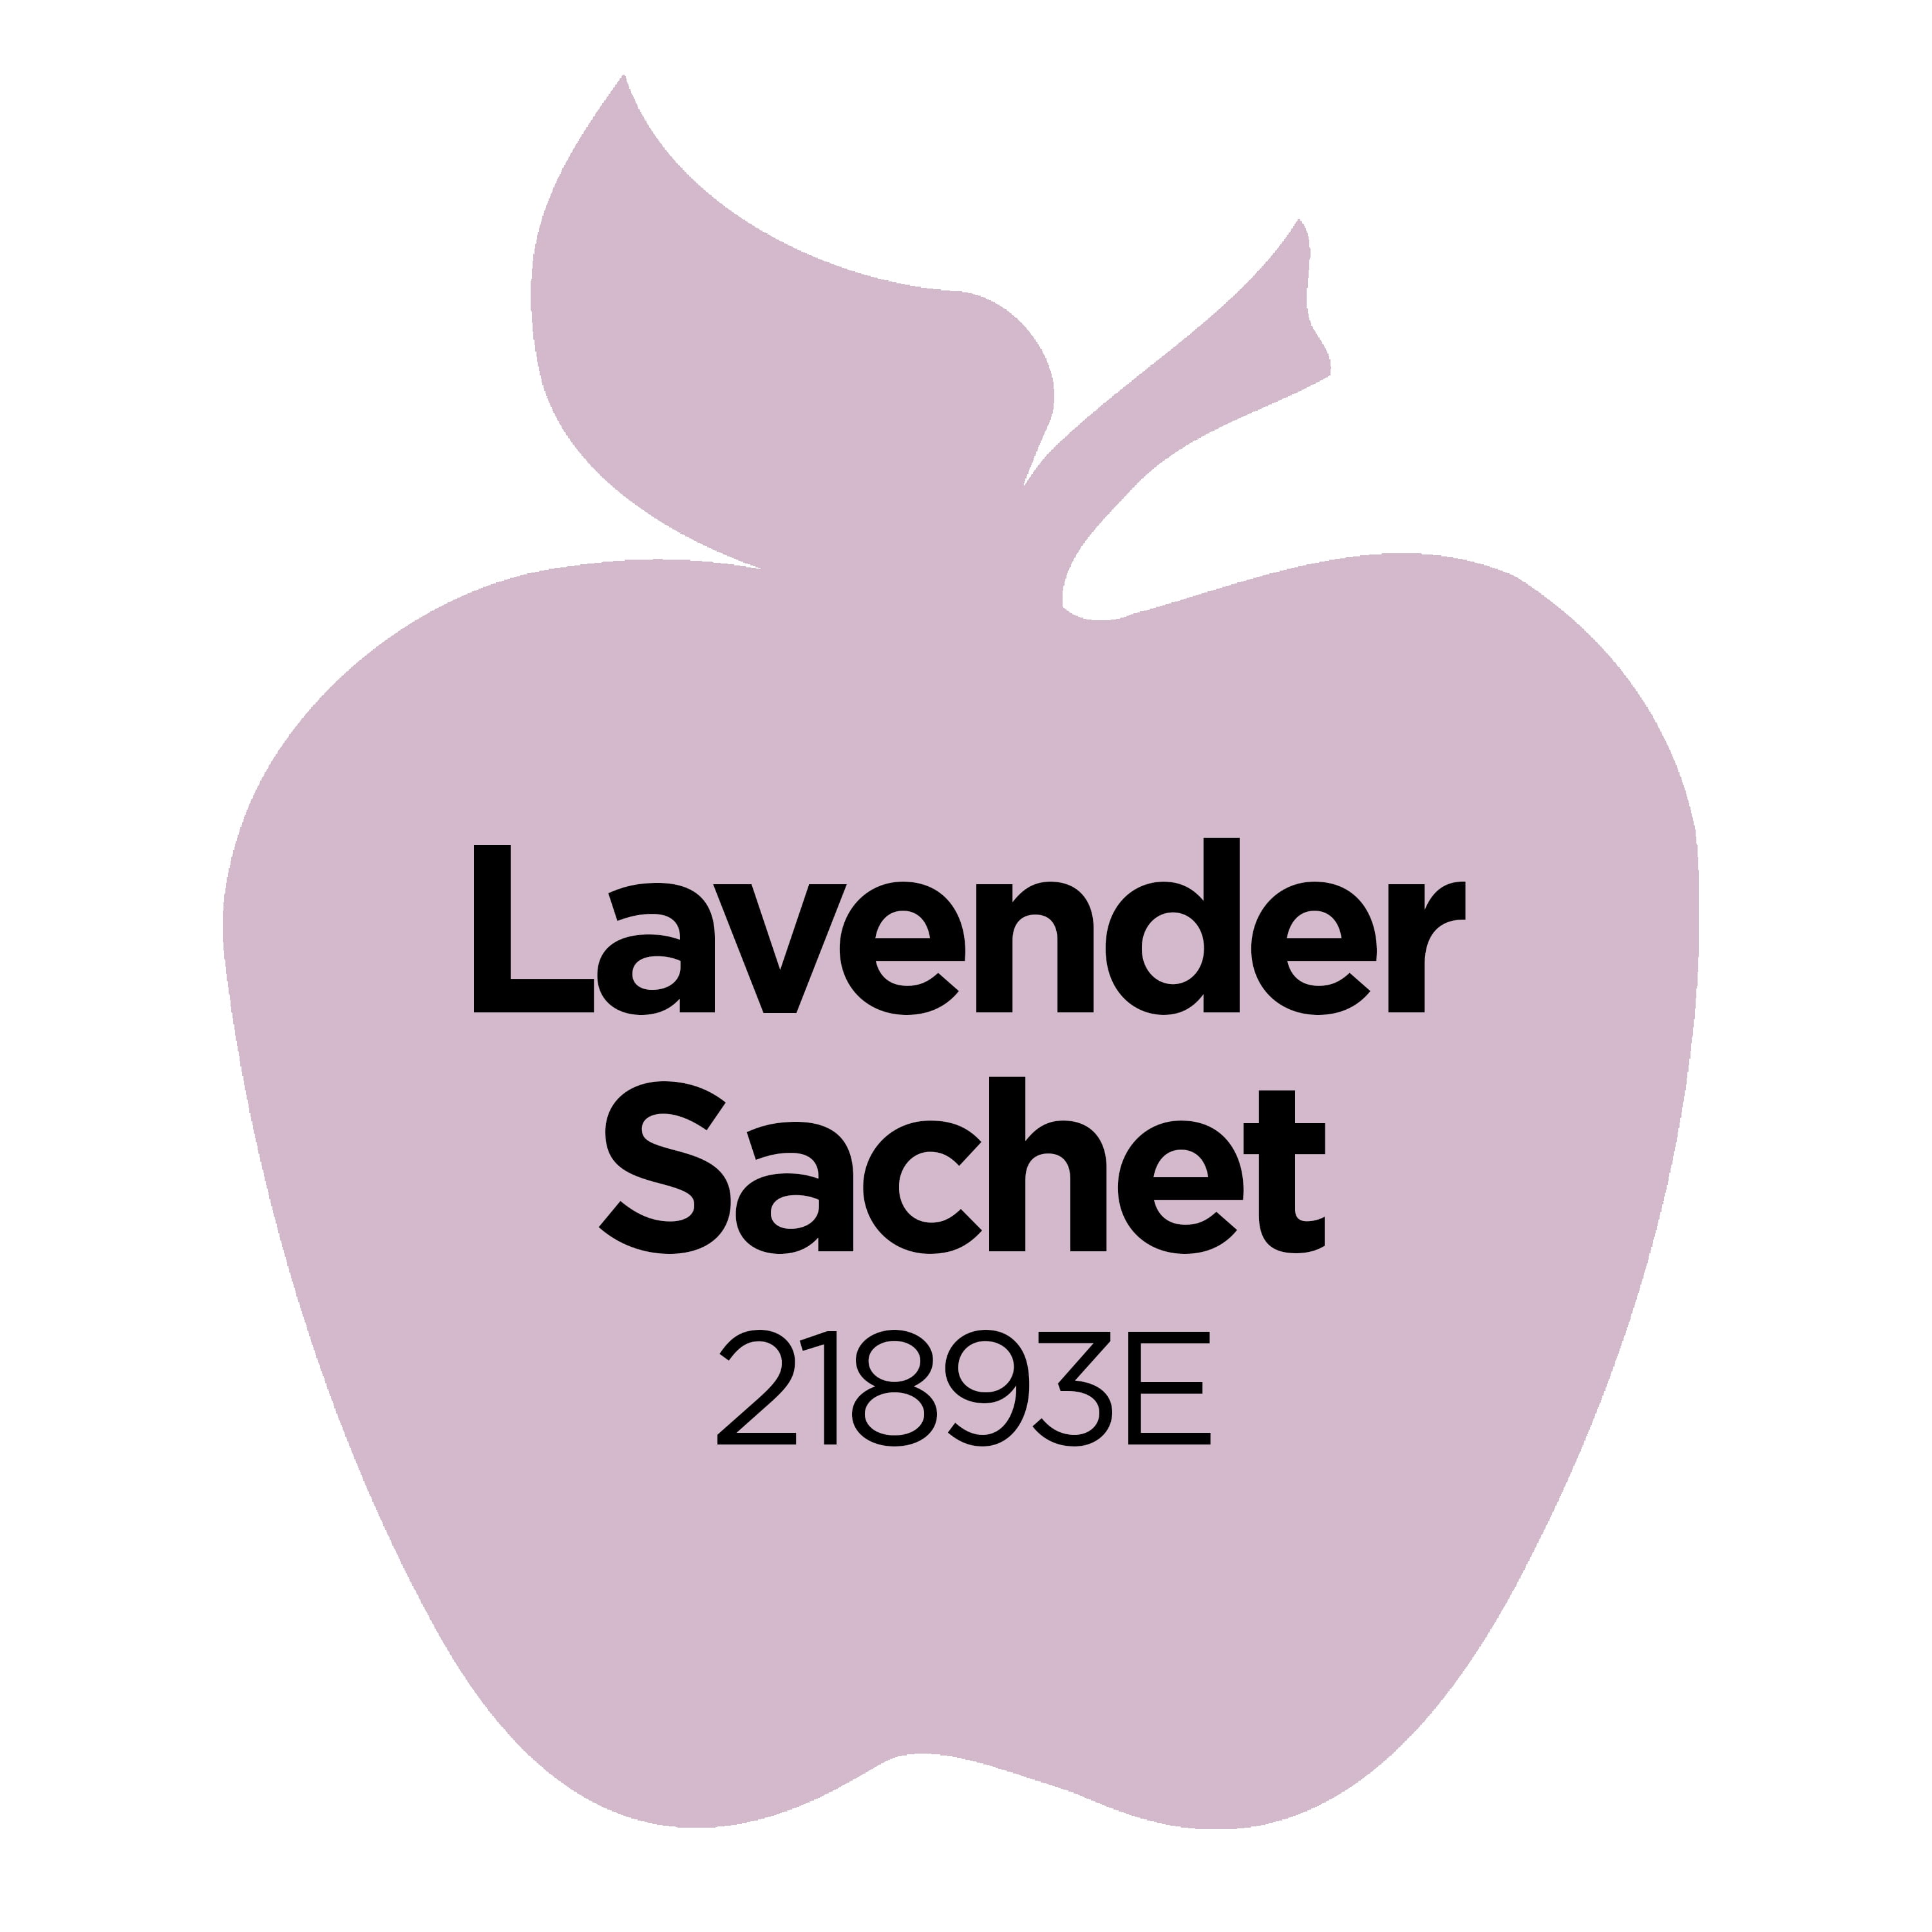 Plaid Apple Barrel Acrylic Paint Set - Royal Violet & Lavender